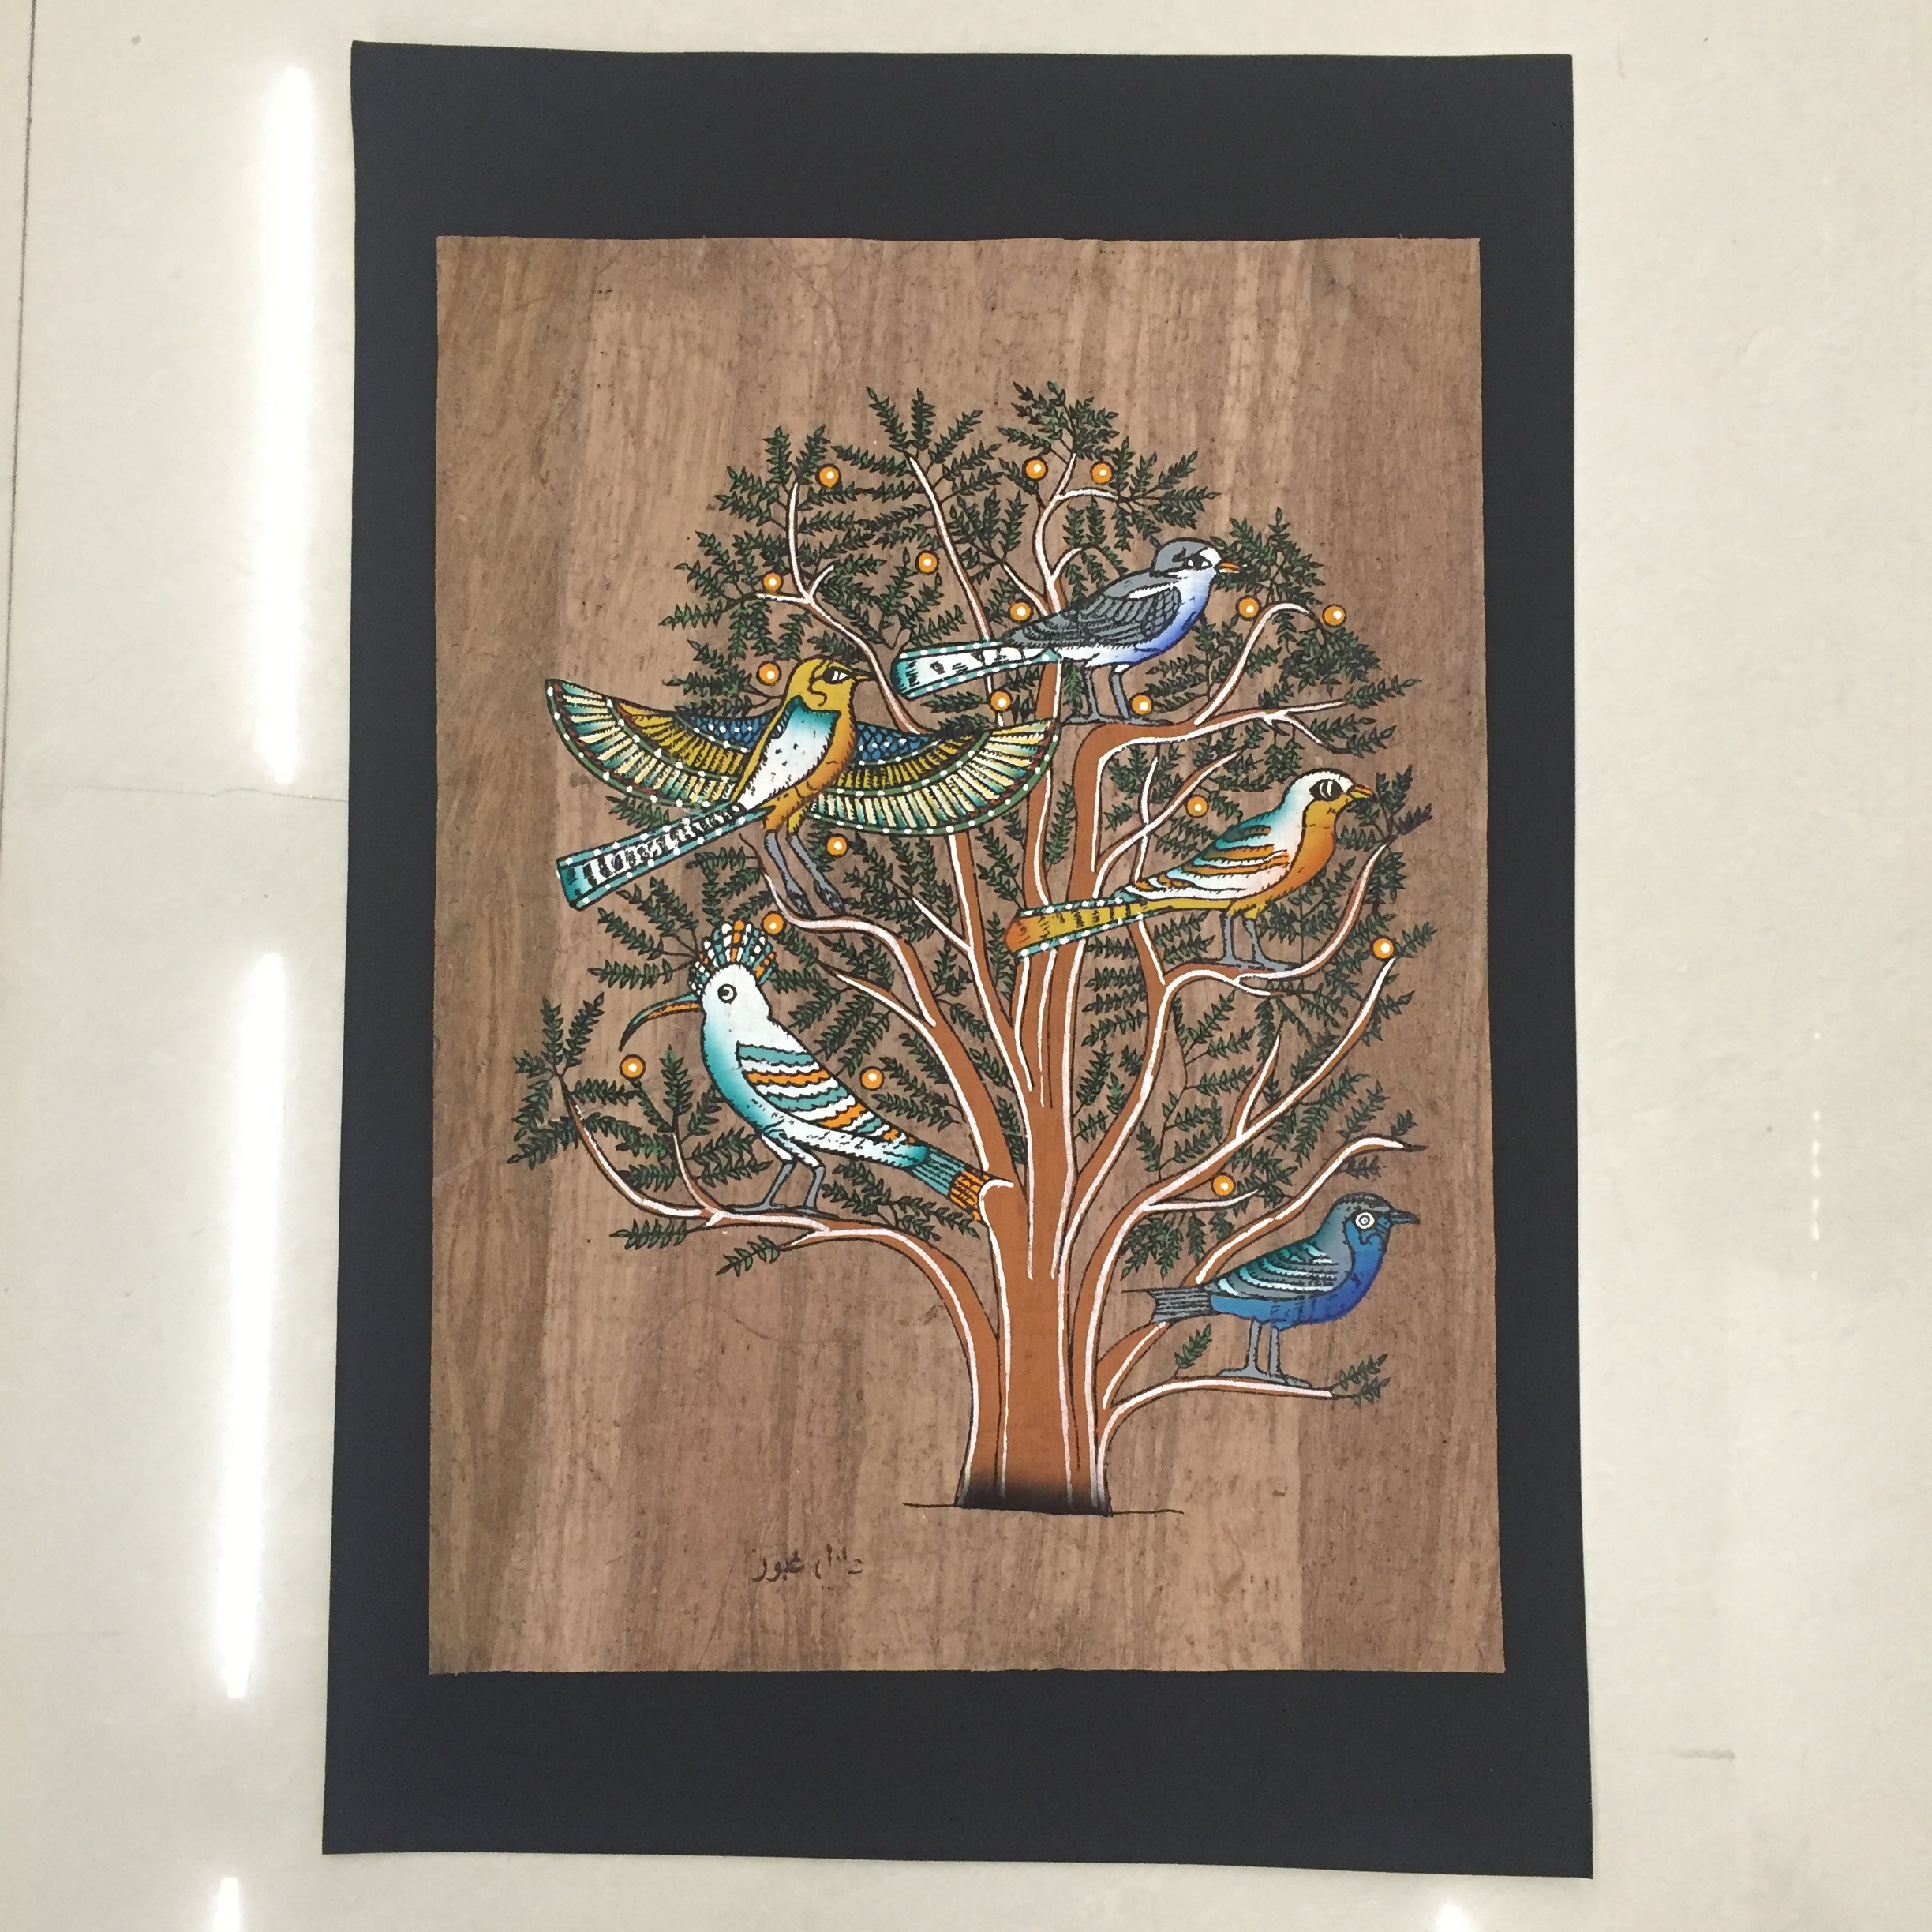 埃及纸莎草 人工手绘 生命之树 奈菲尔提提 埃及特产 代购